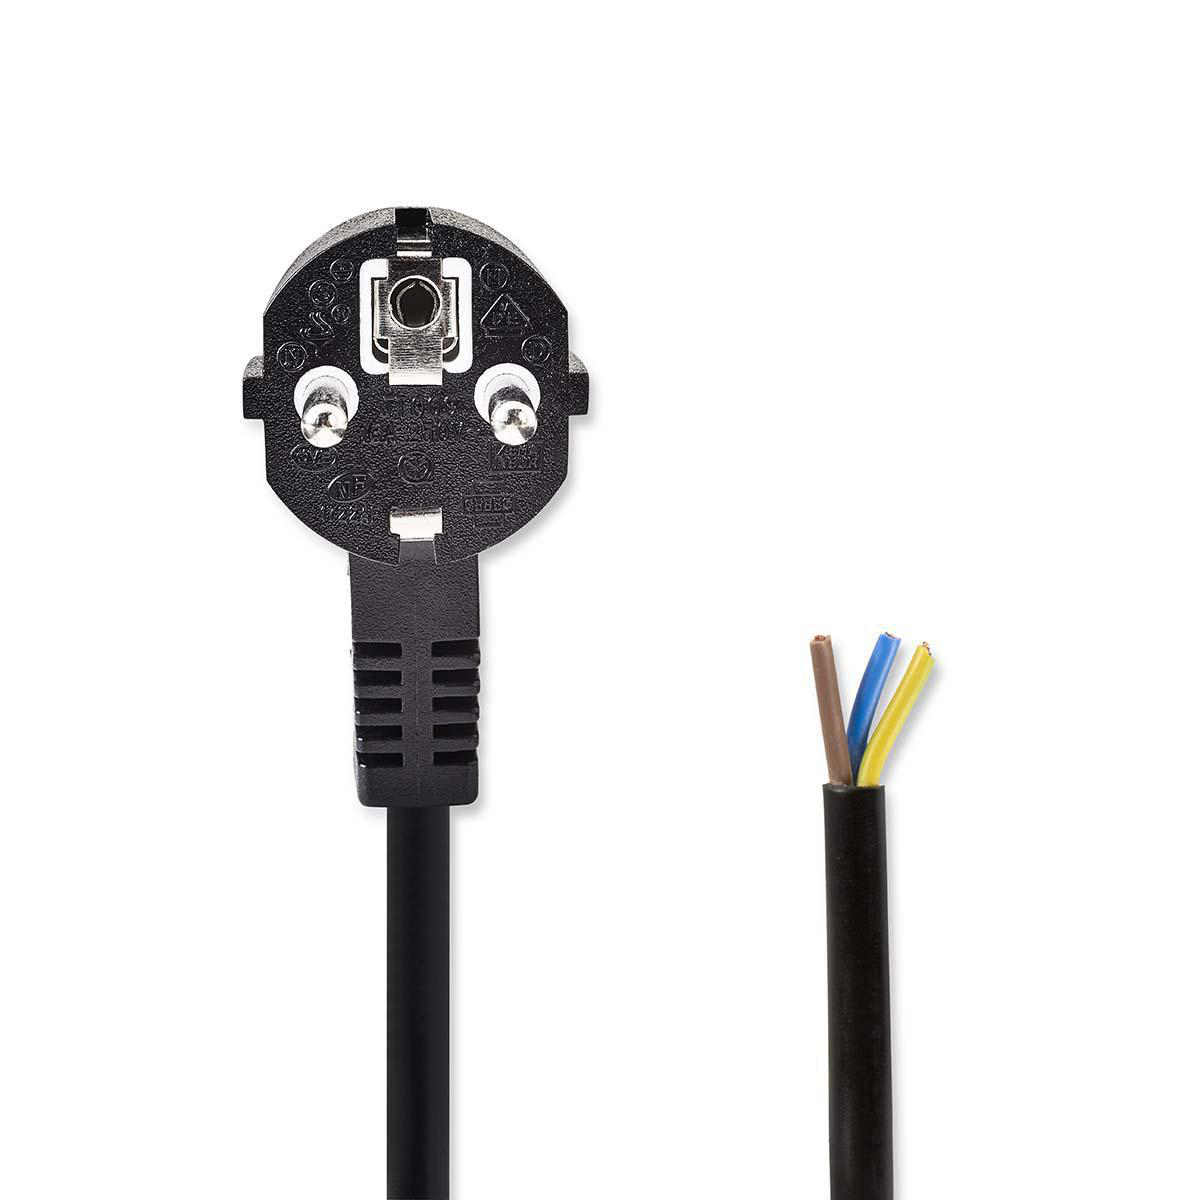 Napájecí flexo kabel UNISCHUKO 3 x 1.00 mm černý, 3 m (PCGP10700BK30)